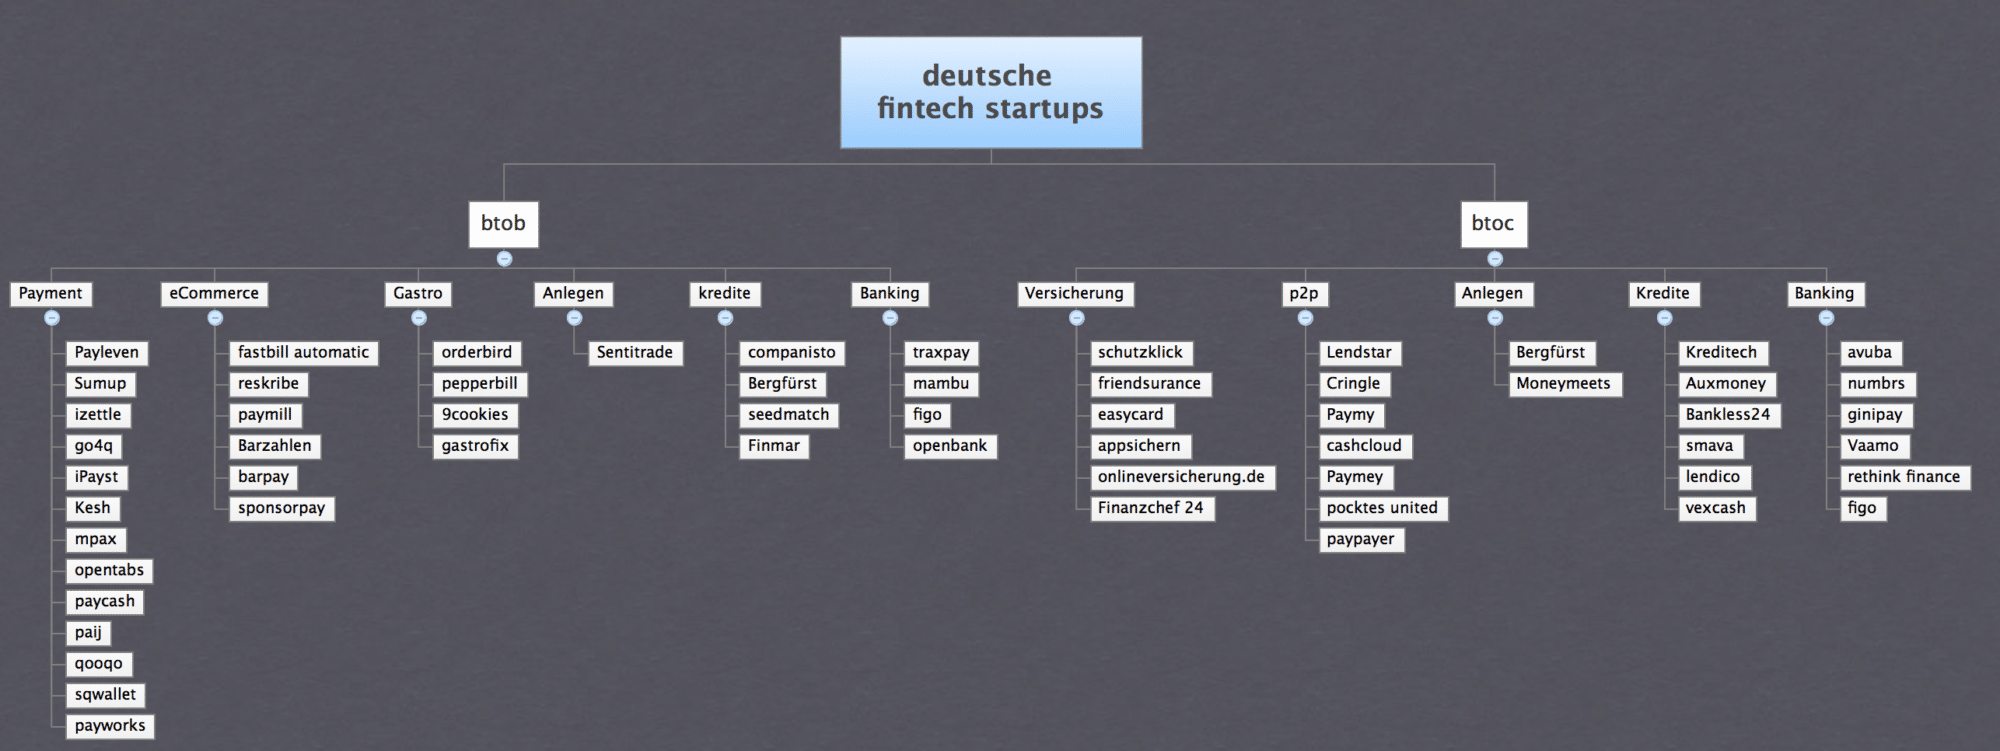 Fin-Tech StartUps